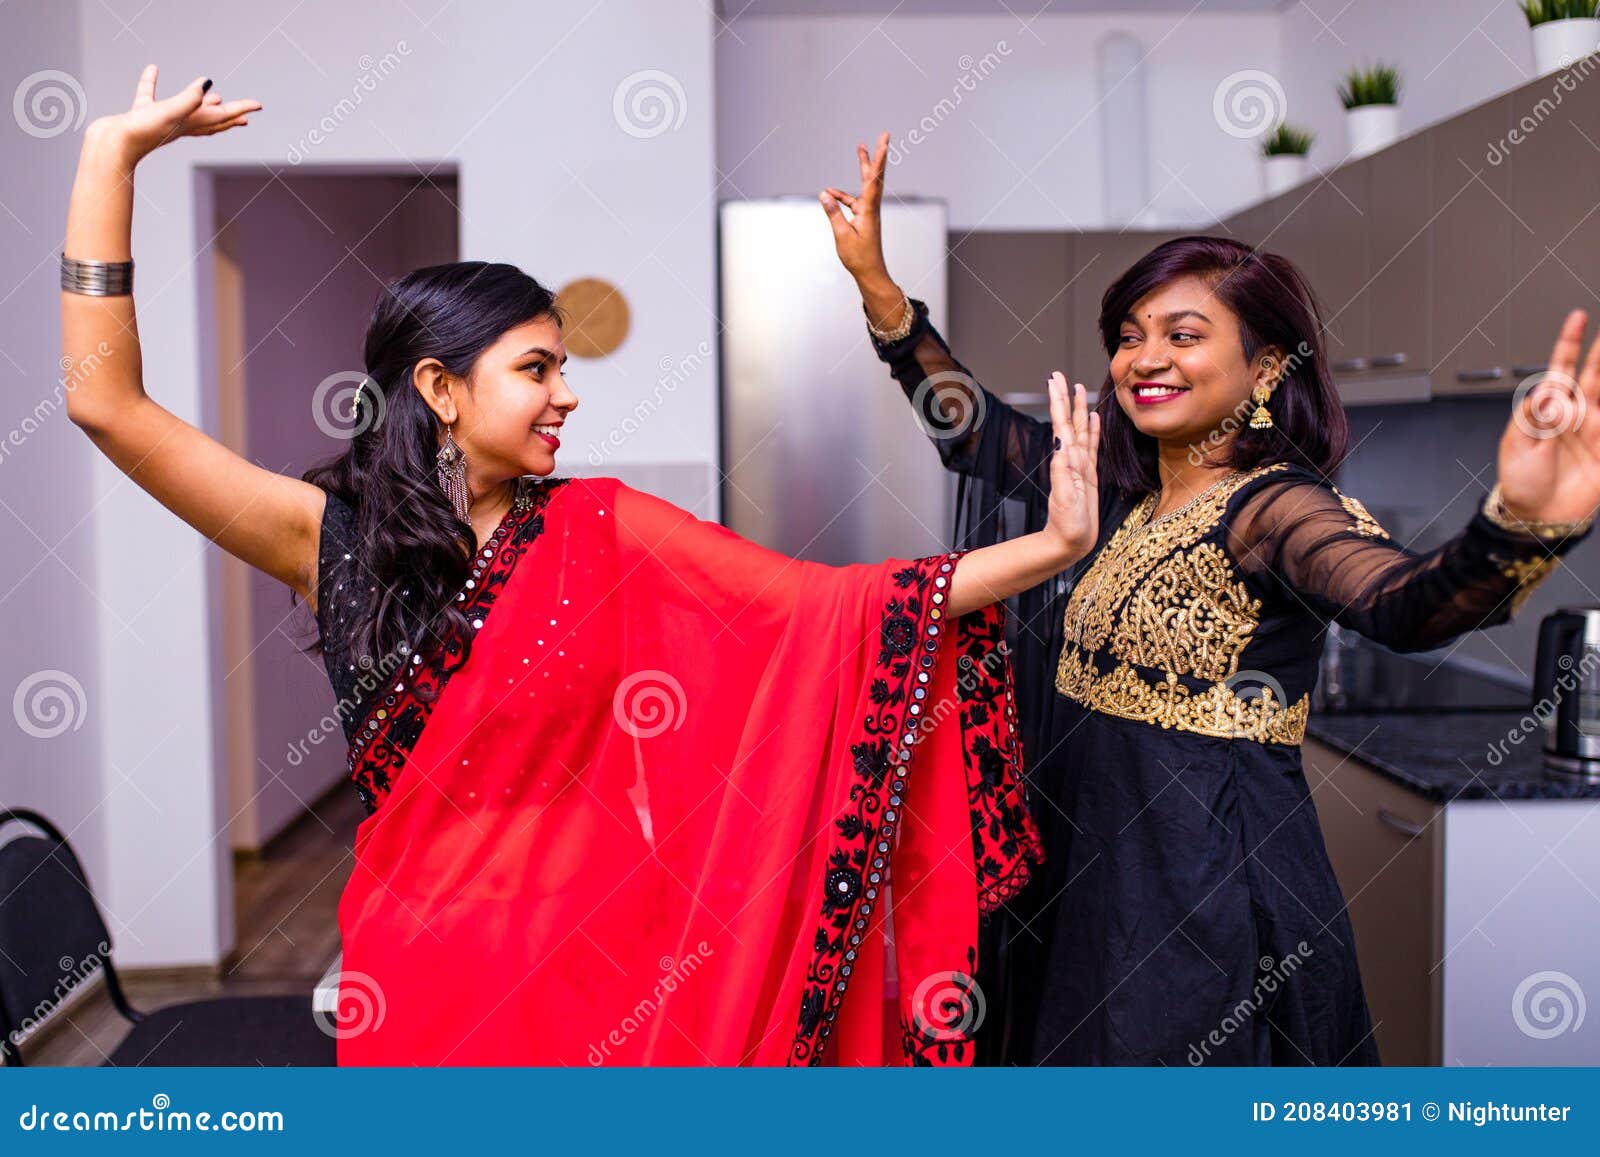 Women's Heavy Diwali Dress